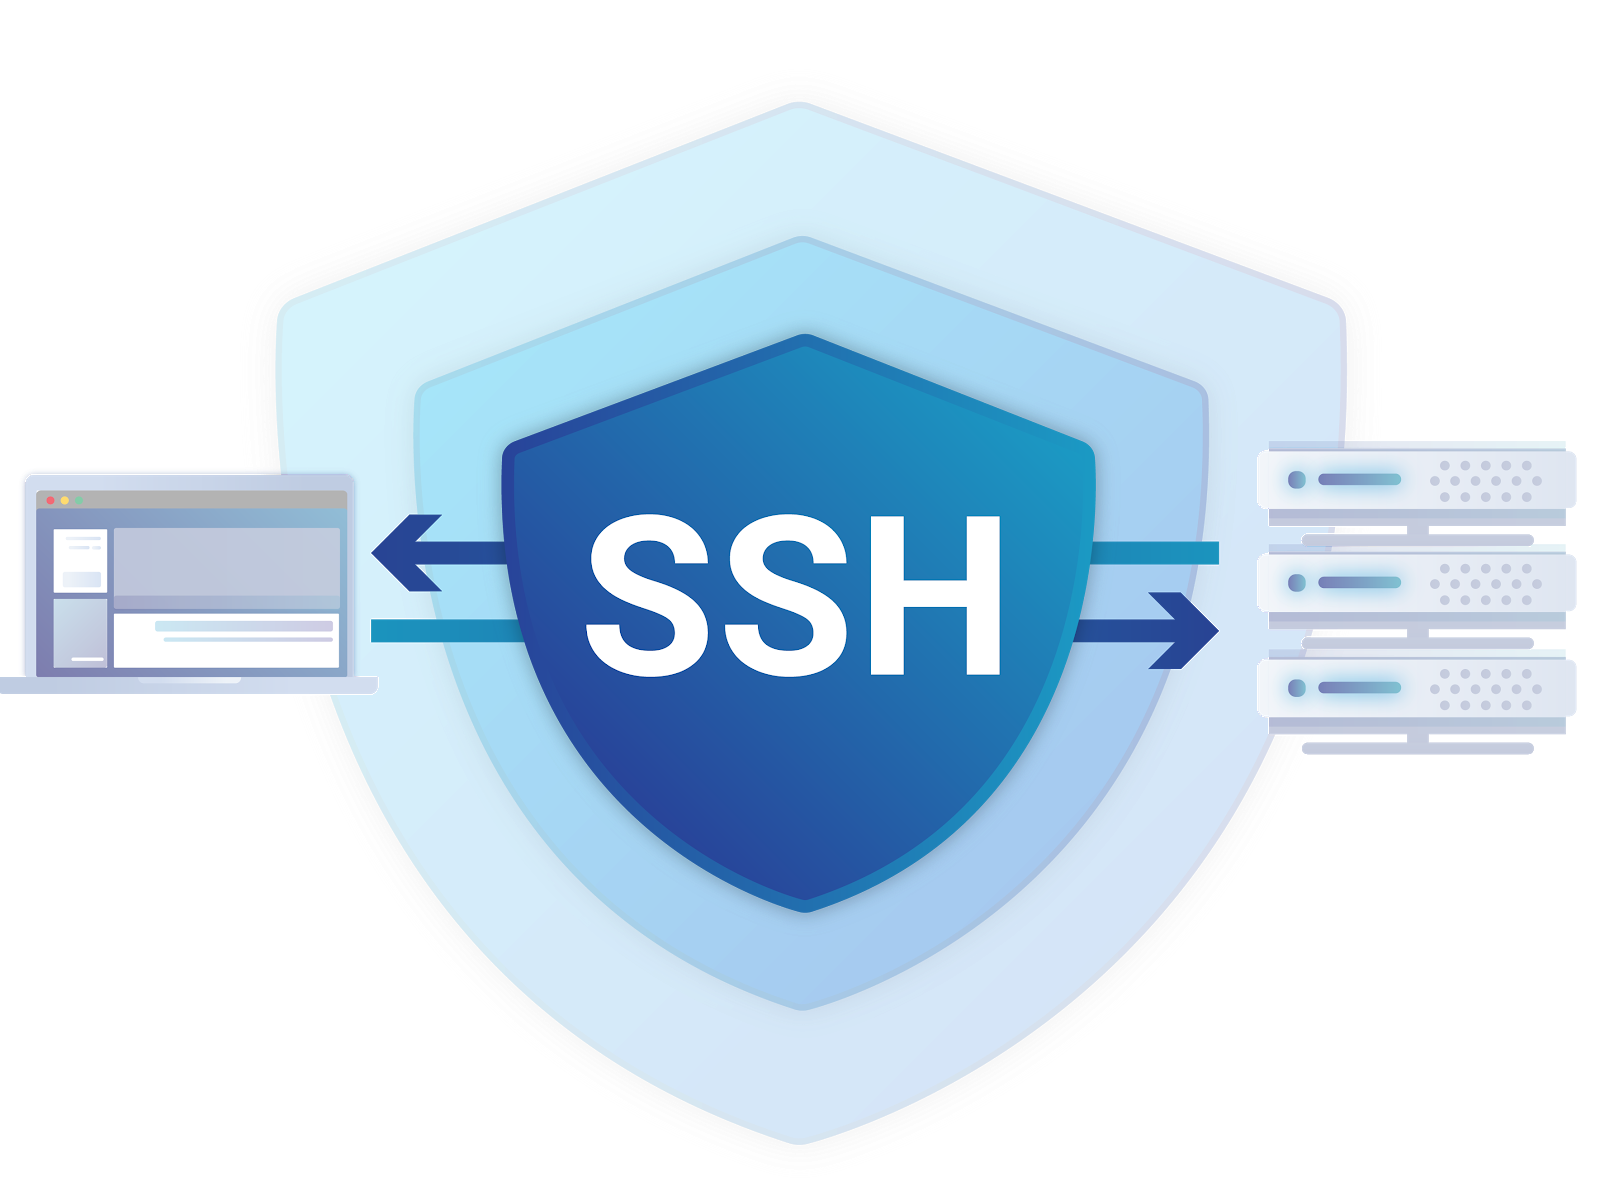 VPS 初体验（二）使用 SSH 连接远程主机